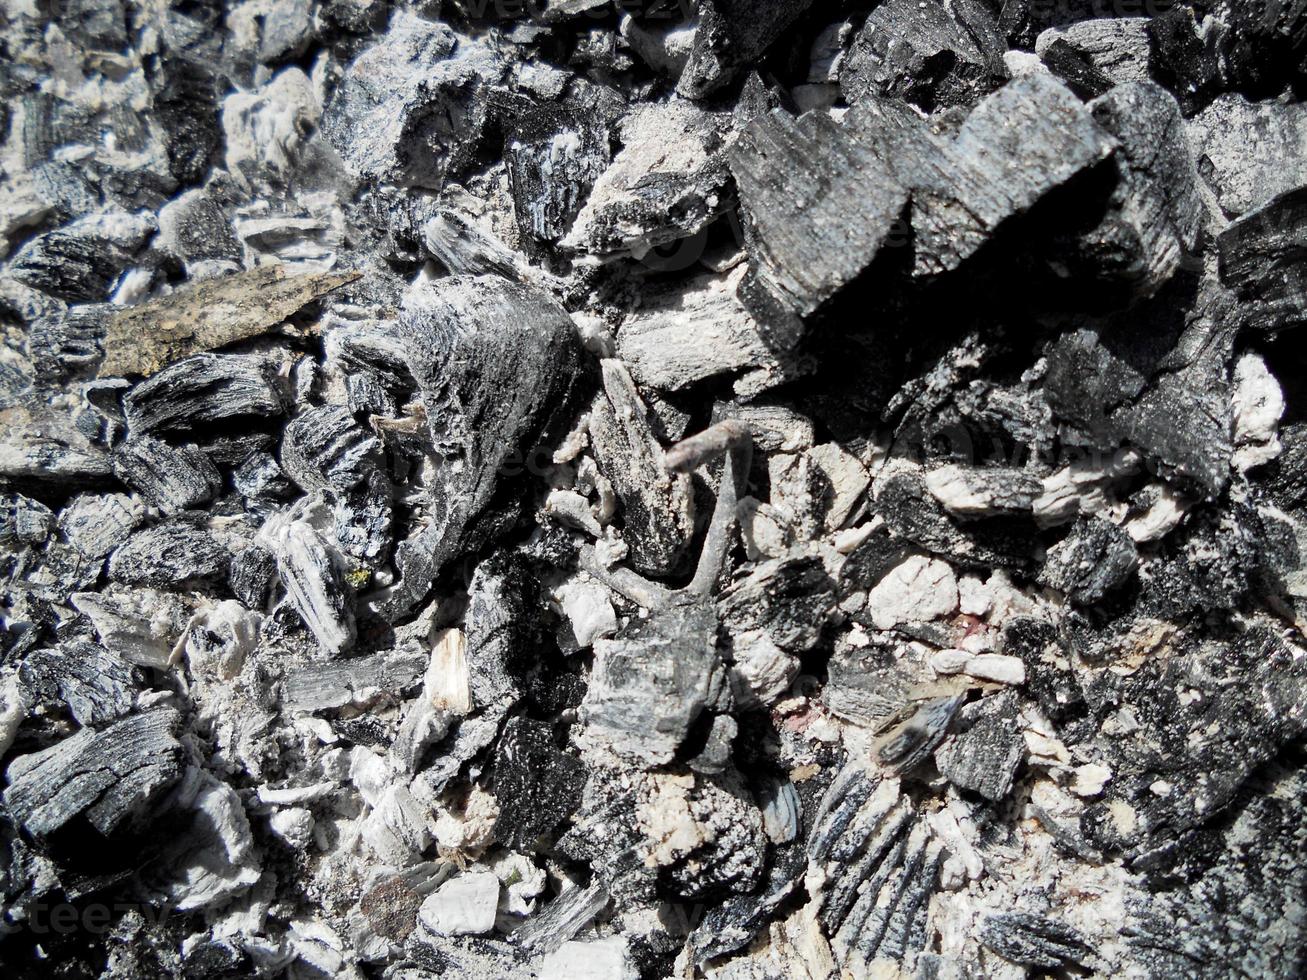 röd flamma från skivat trä, mörkgrå svart kol inuti metallpanna. foto